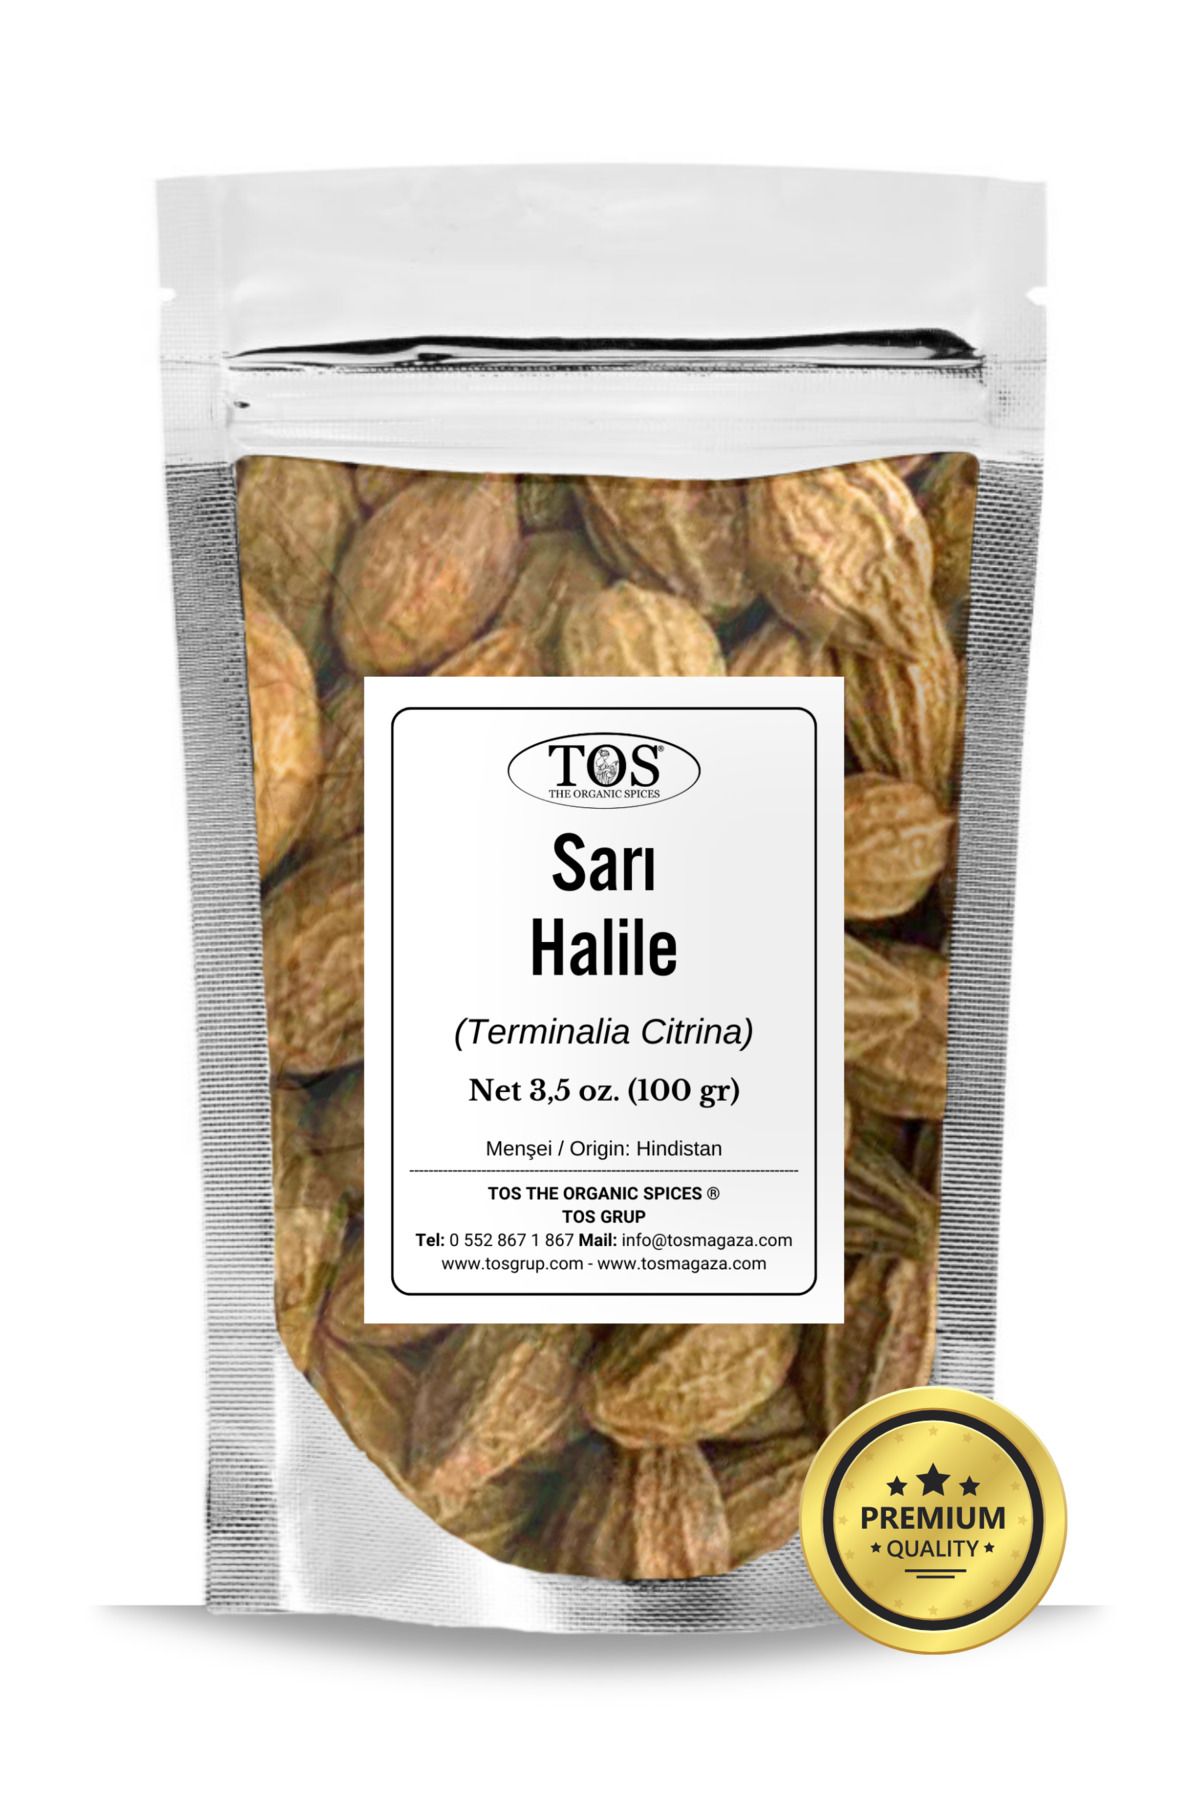 TOS The Organic Spices Sarı Halile 100 Gr (1. Kalite) Terminalia Citrina